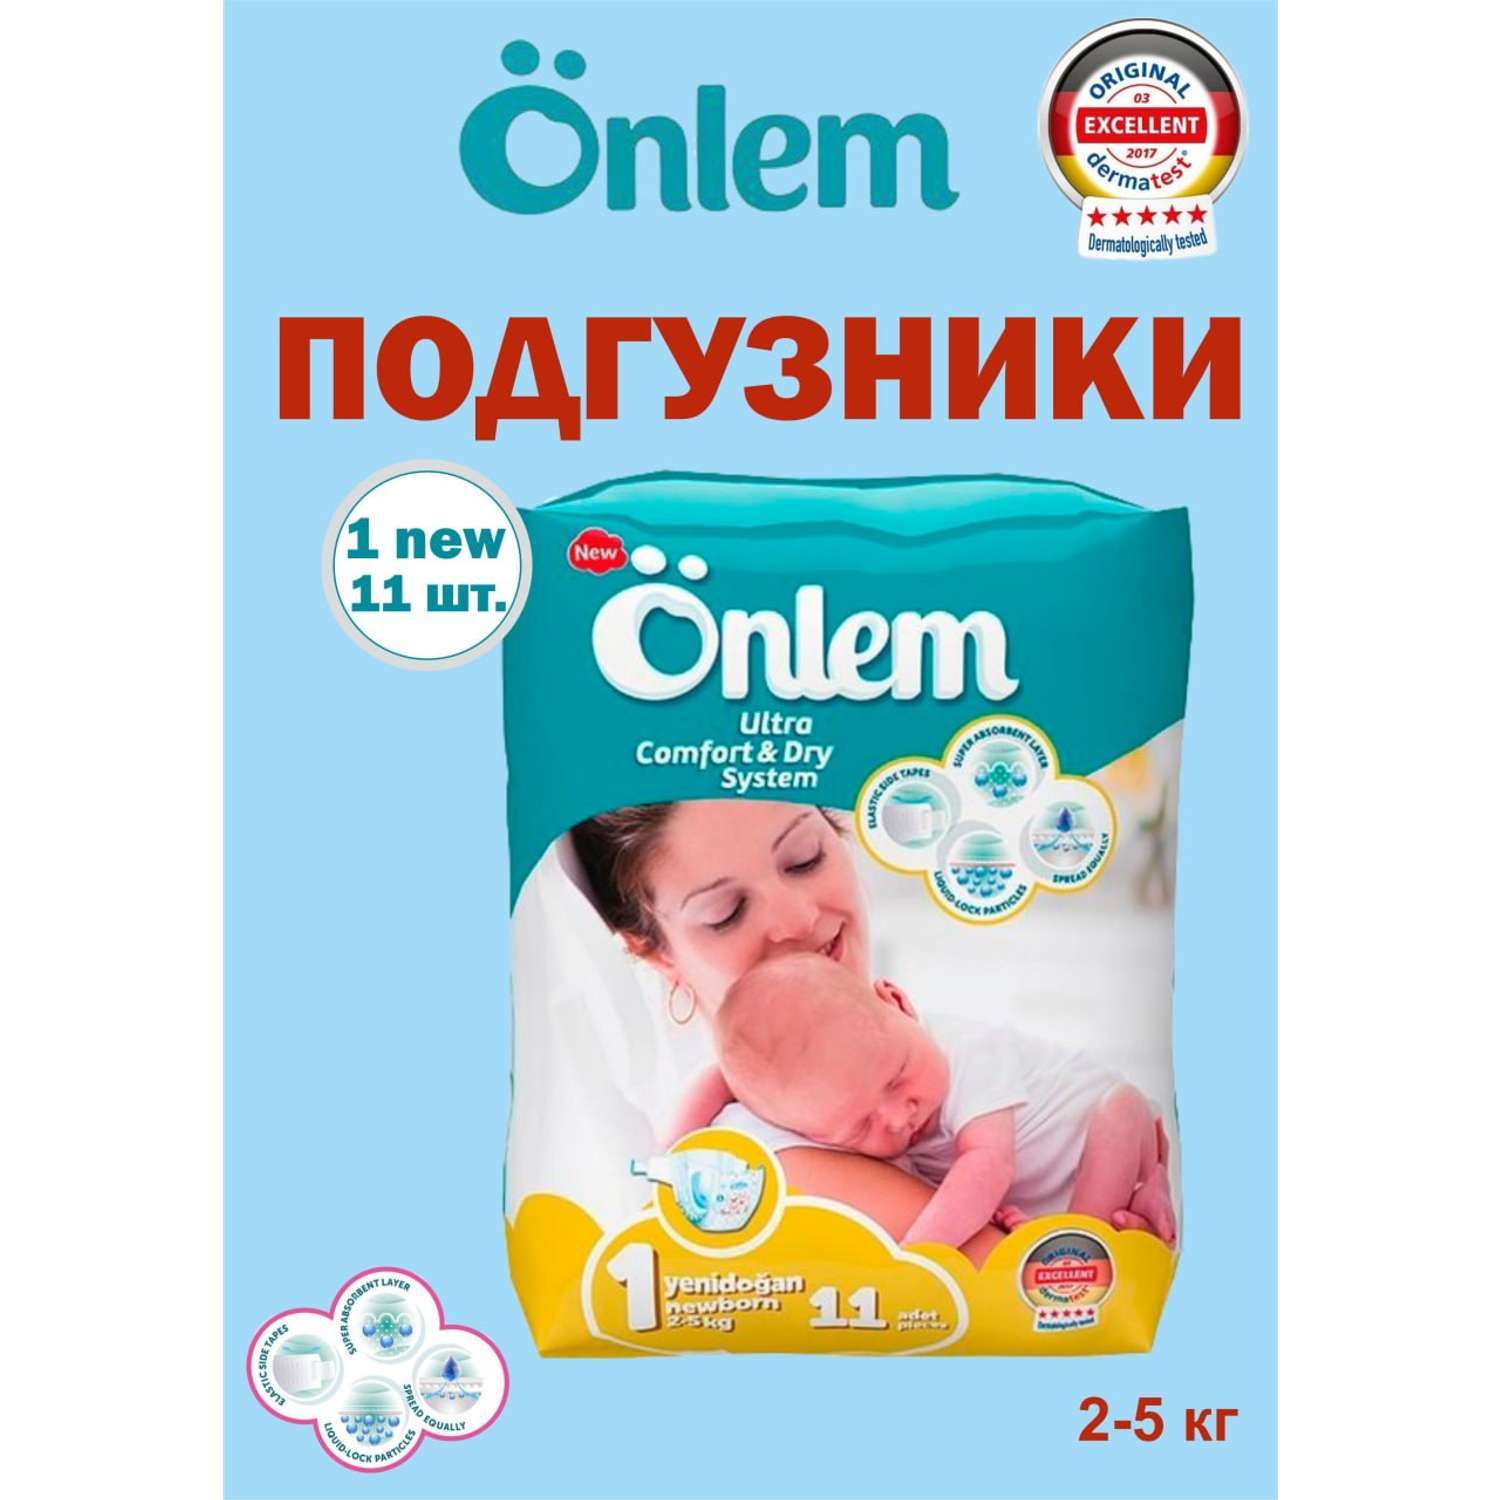 Детские подгузники Onlem Classik 1 (2-5 кг) mini 11 шт в упаковке - фото 8